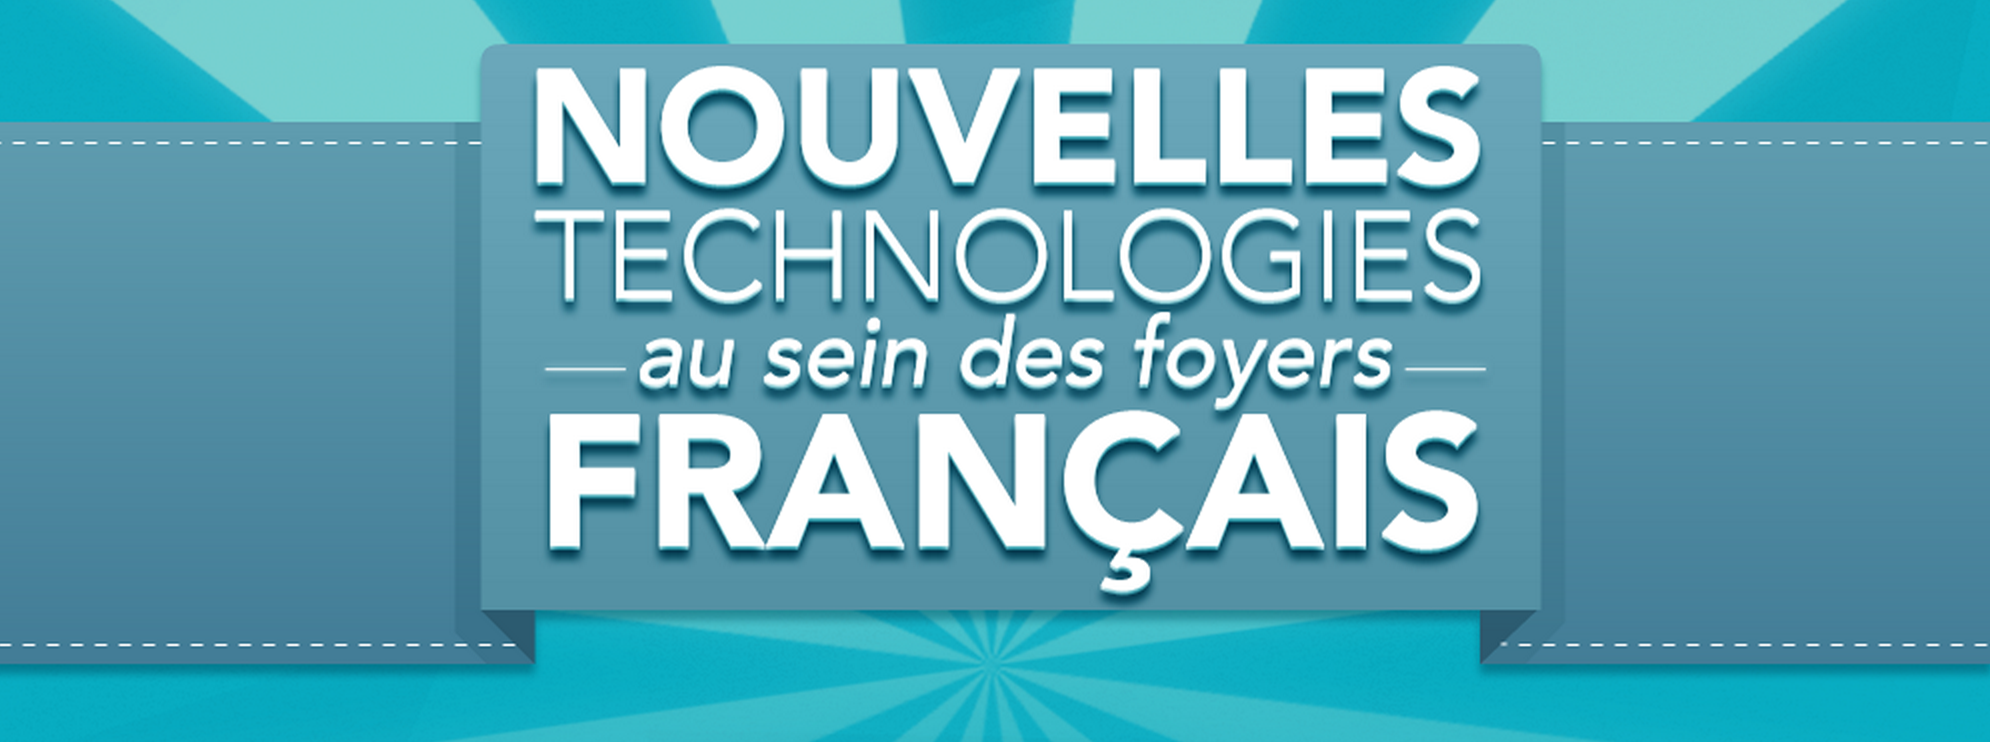 Nouvelles technologies foyers Francais 2013